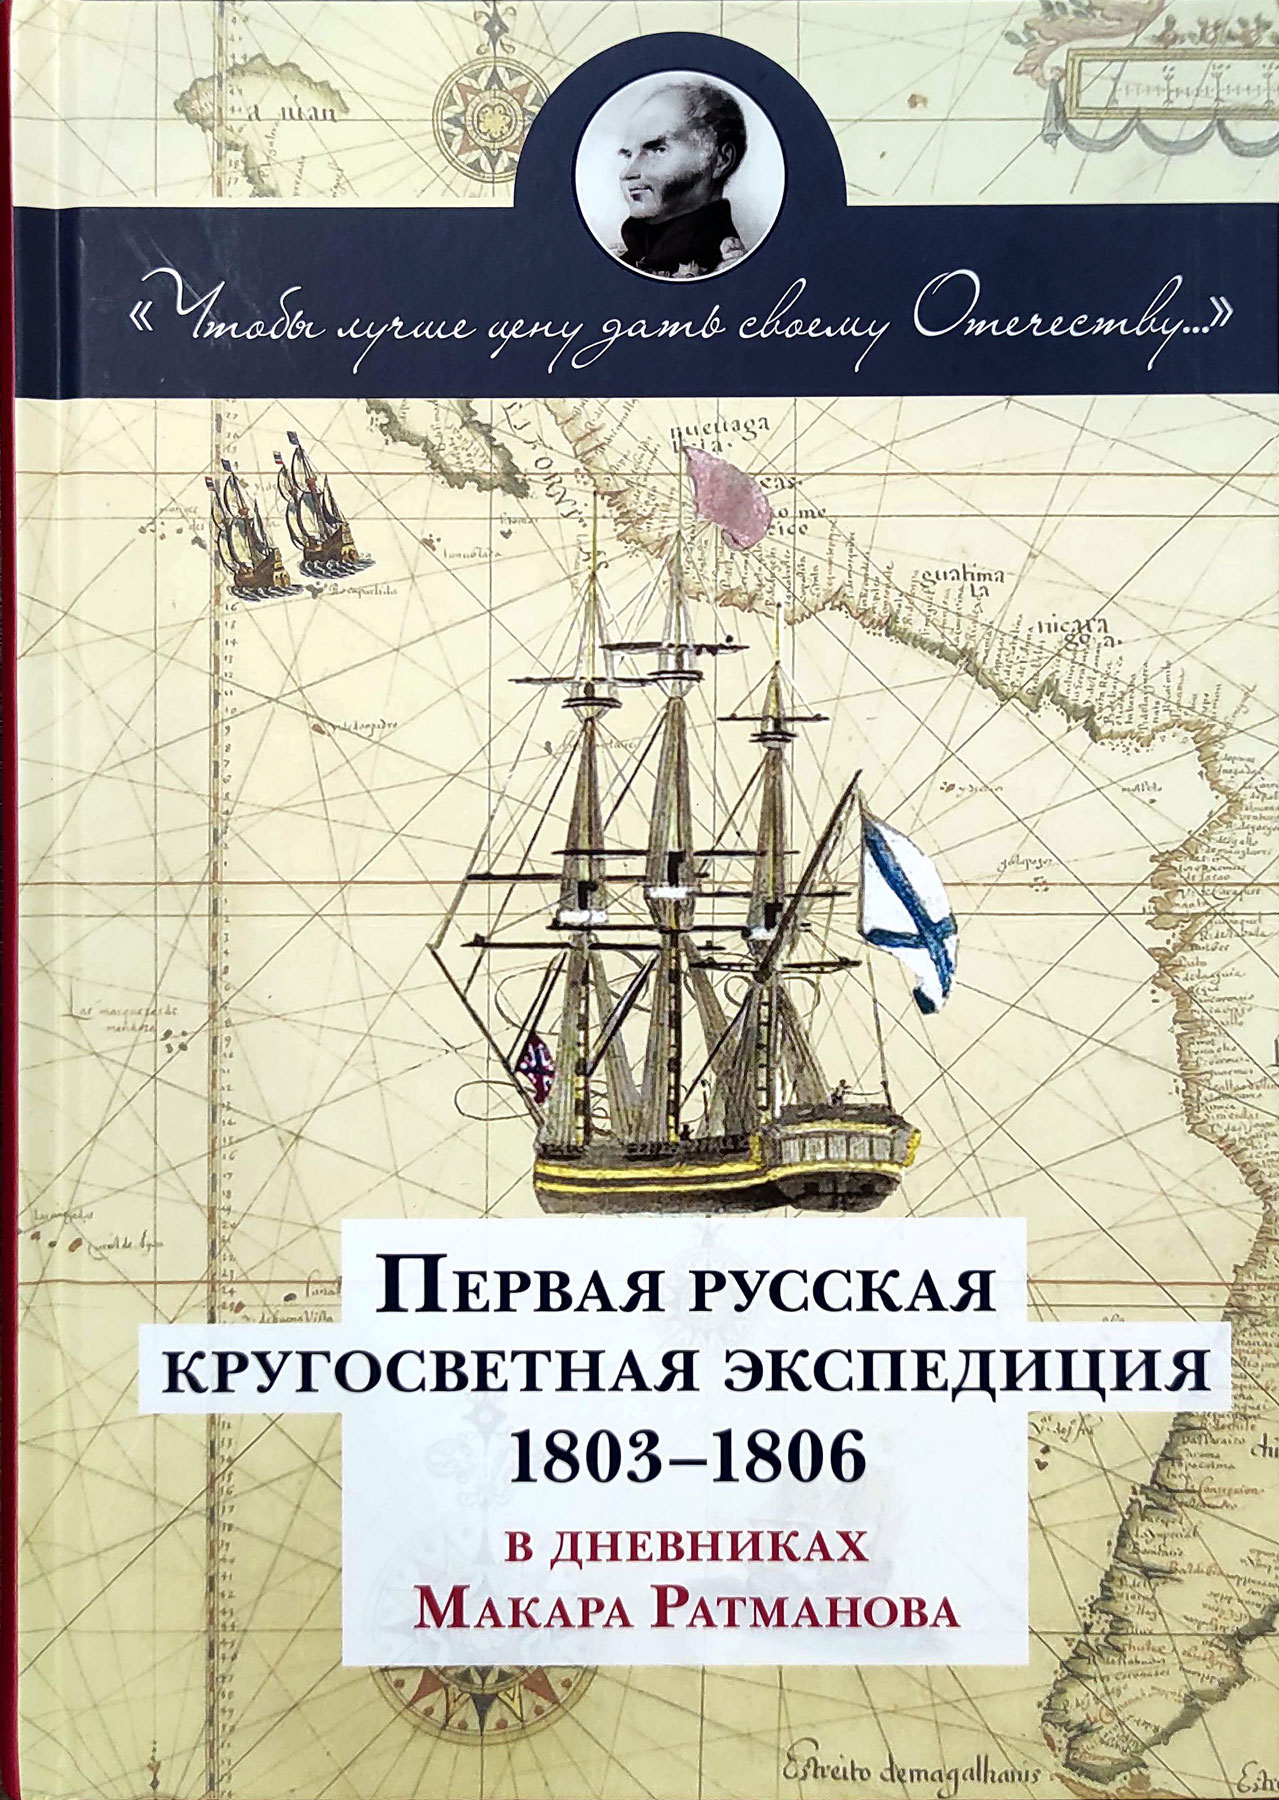 Первая русская кругосветная экспедиция 1803-1806 в дневниках Макара Ратманова